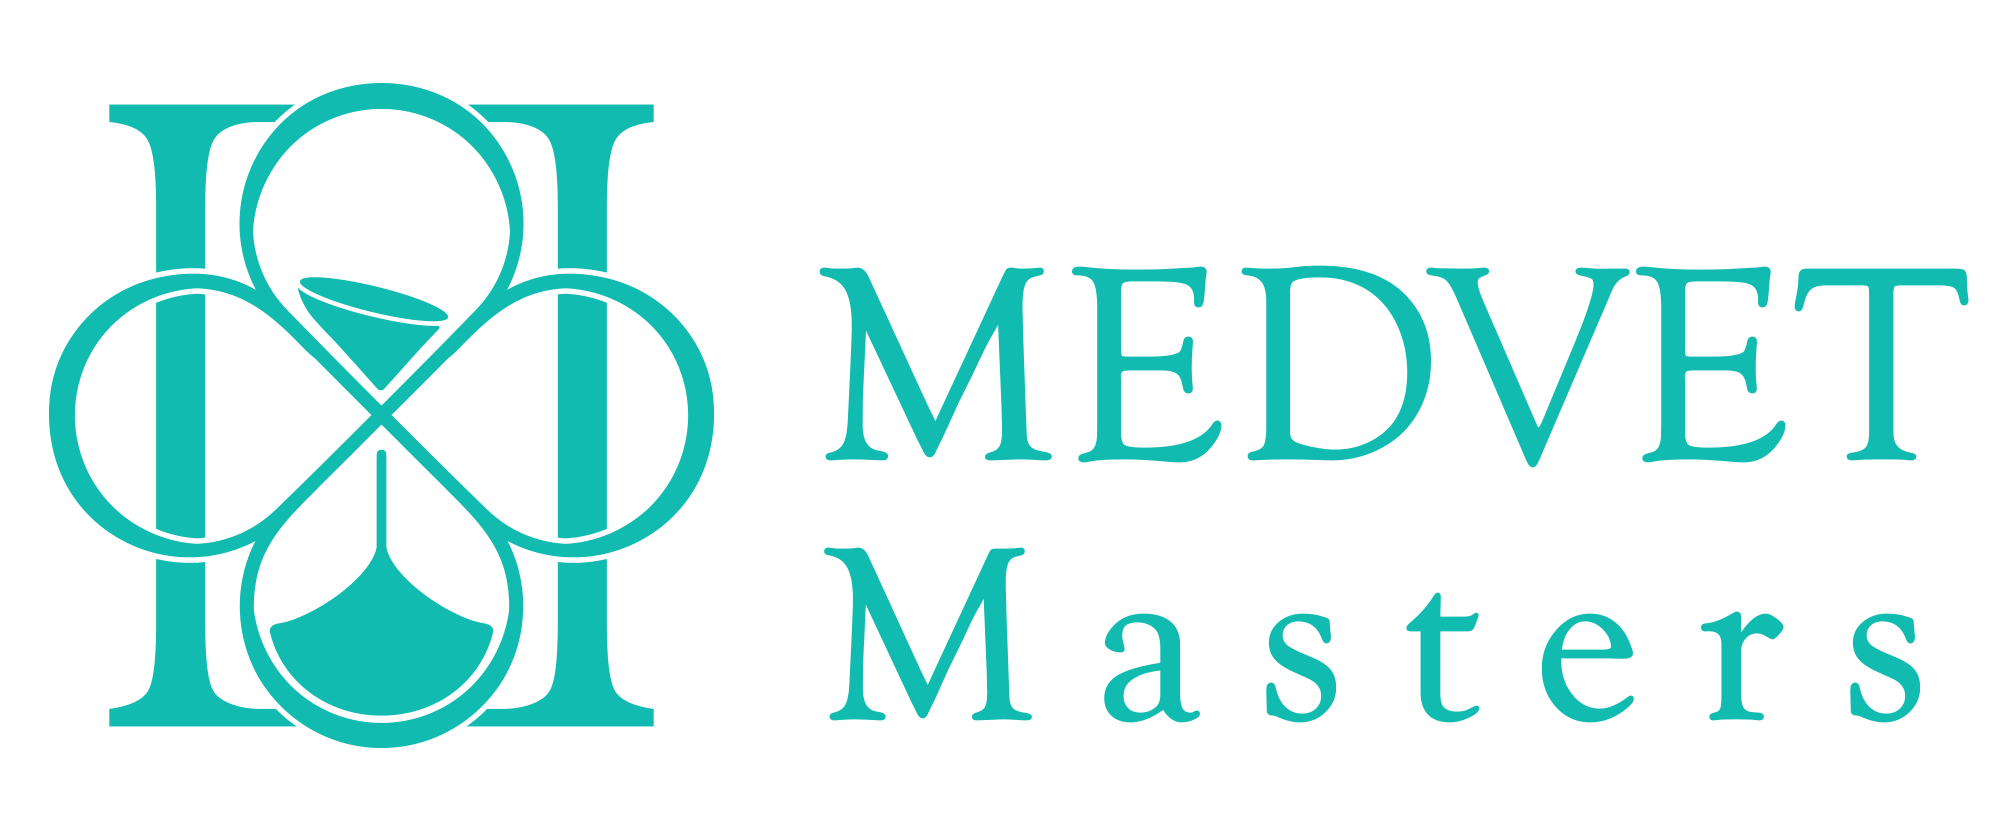 MedVet Masters Coaching, Treinamentos e Desenvolvimento Humano LTDA